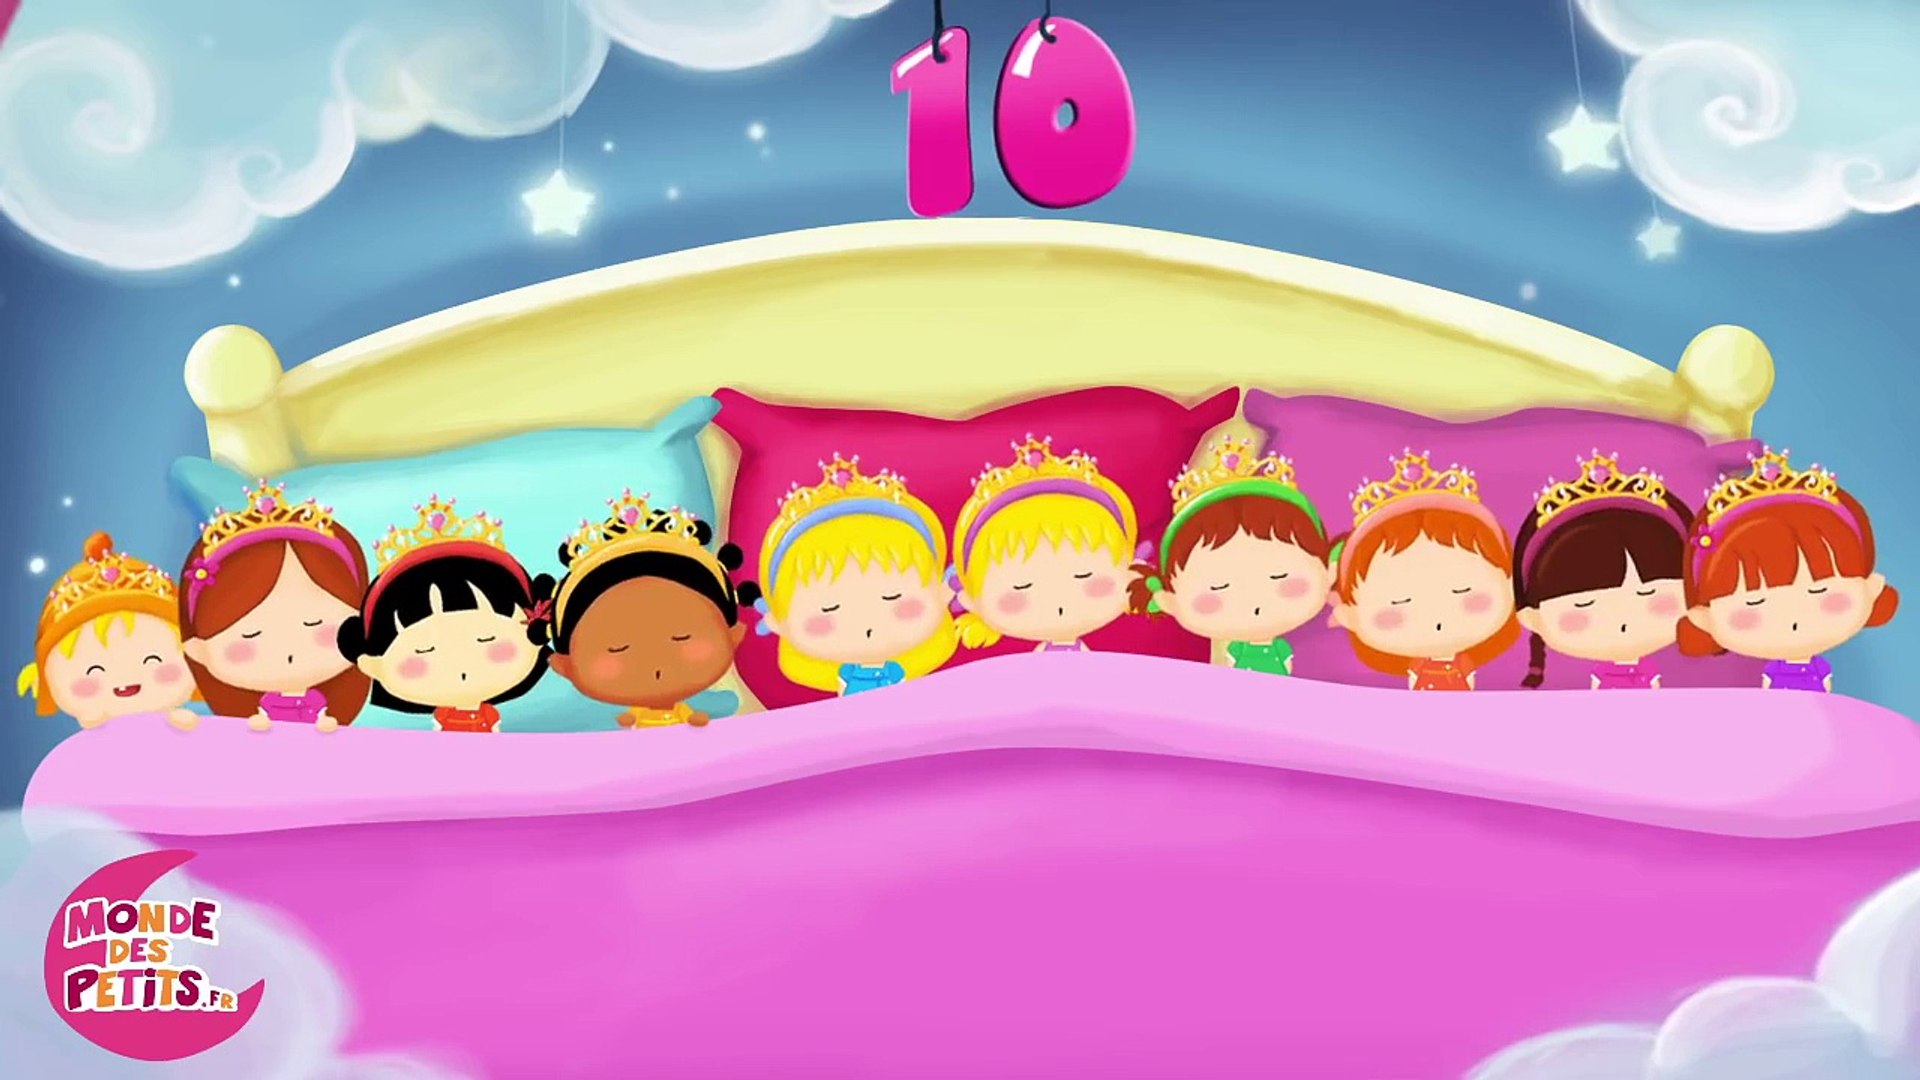 10 dans le lit - Comptine pour les petits enfants - video Dailymotion